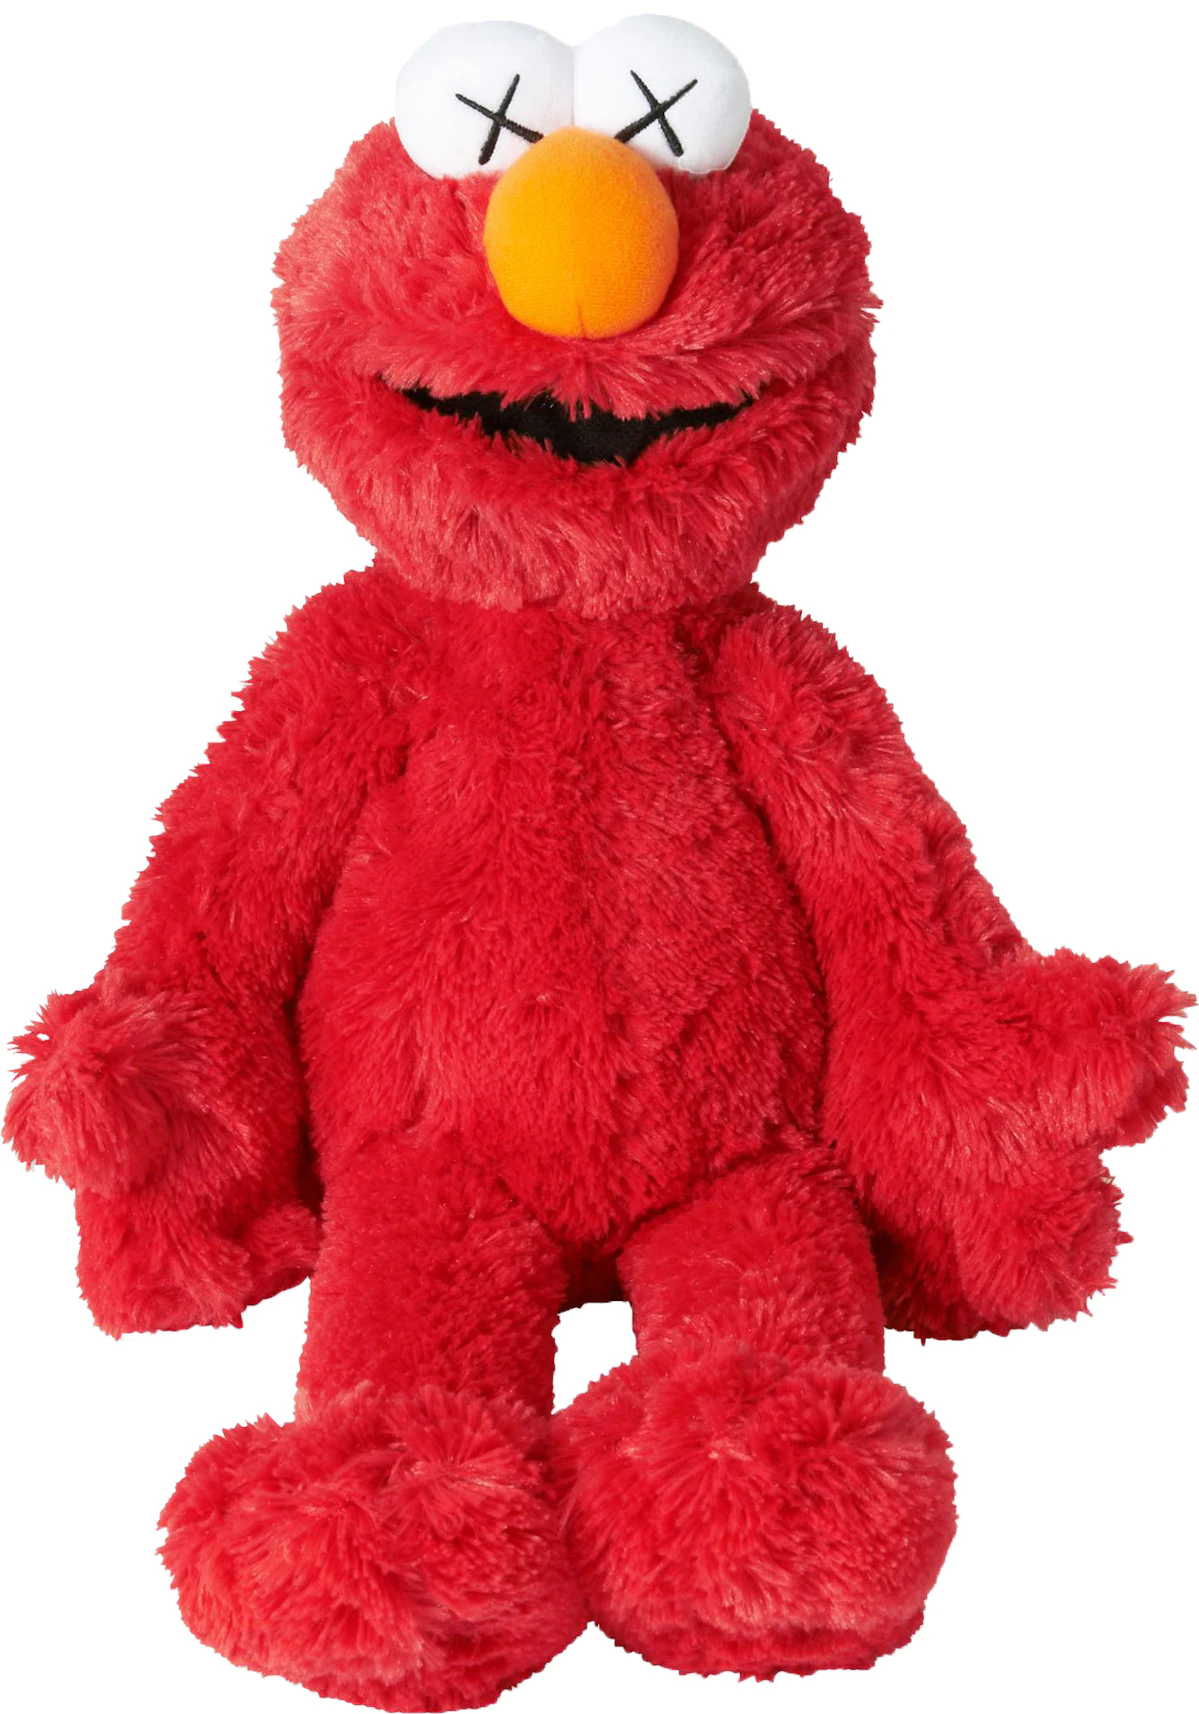 bereiken vooroordeel overdrijven KAWS Sesame Street Uniqlo Elmo Plush Toy Red - US